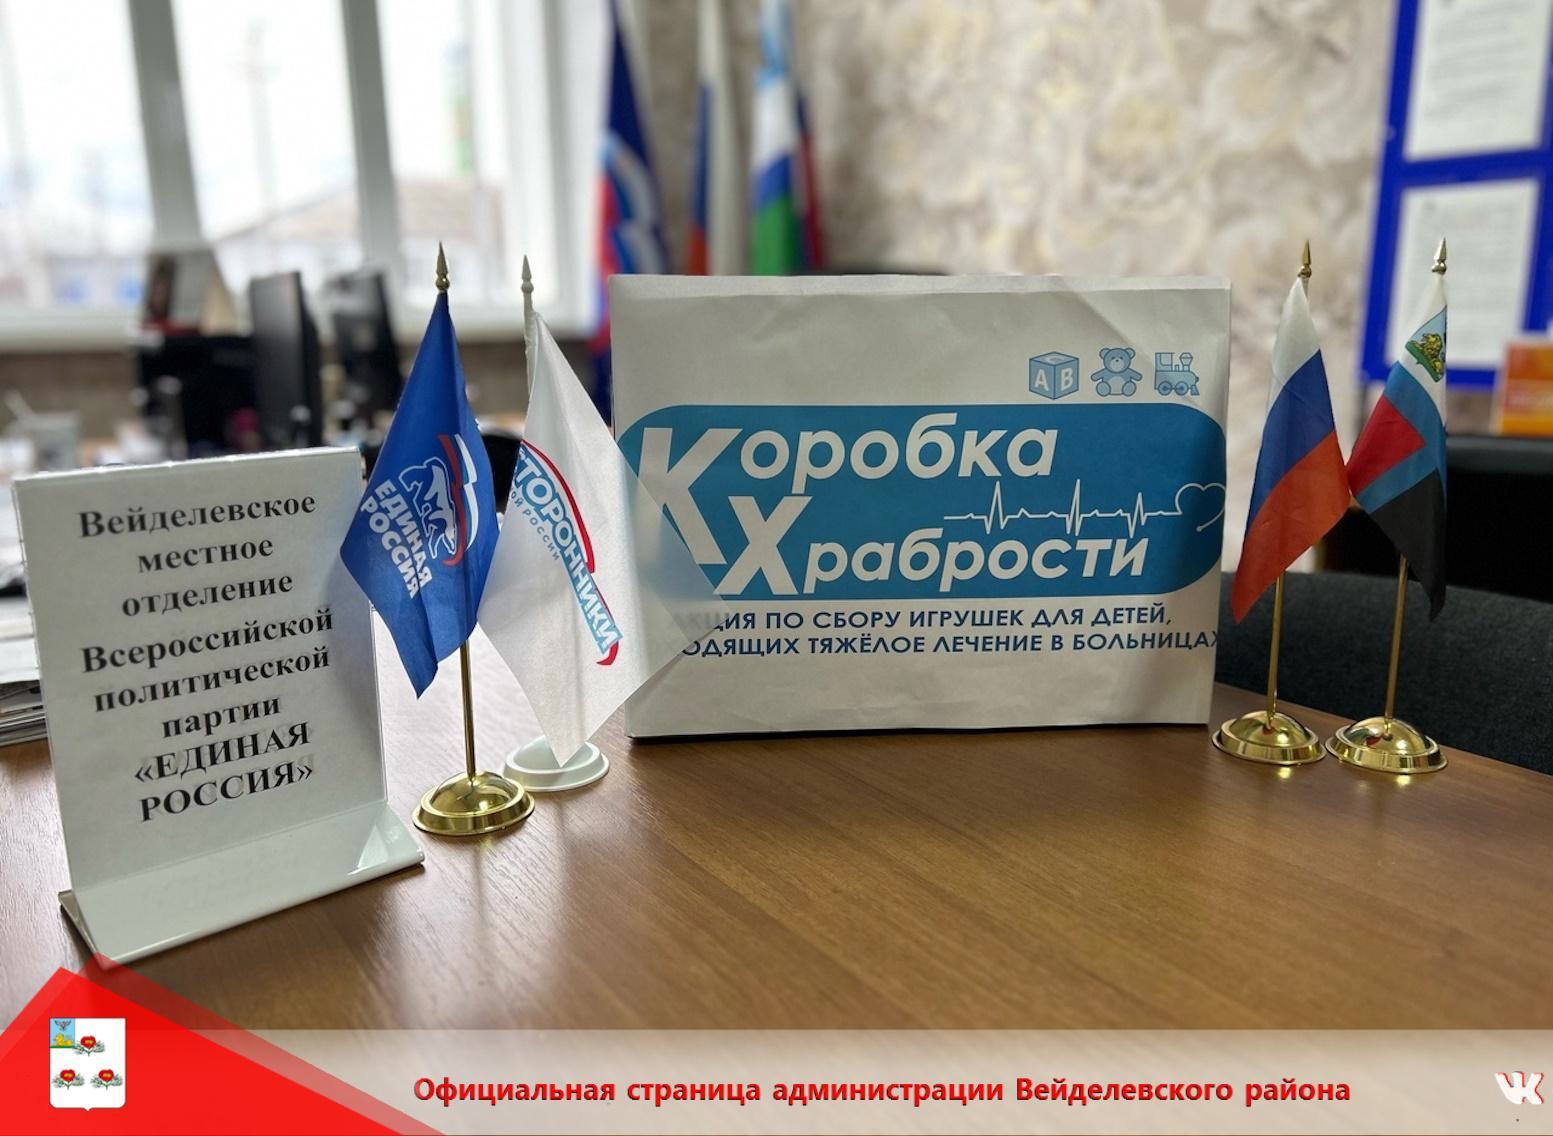 В Вейделевском местном отделении «Единая Россия» проходит акция «Коробка Храбрости».